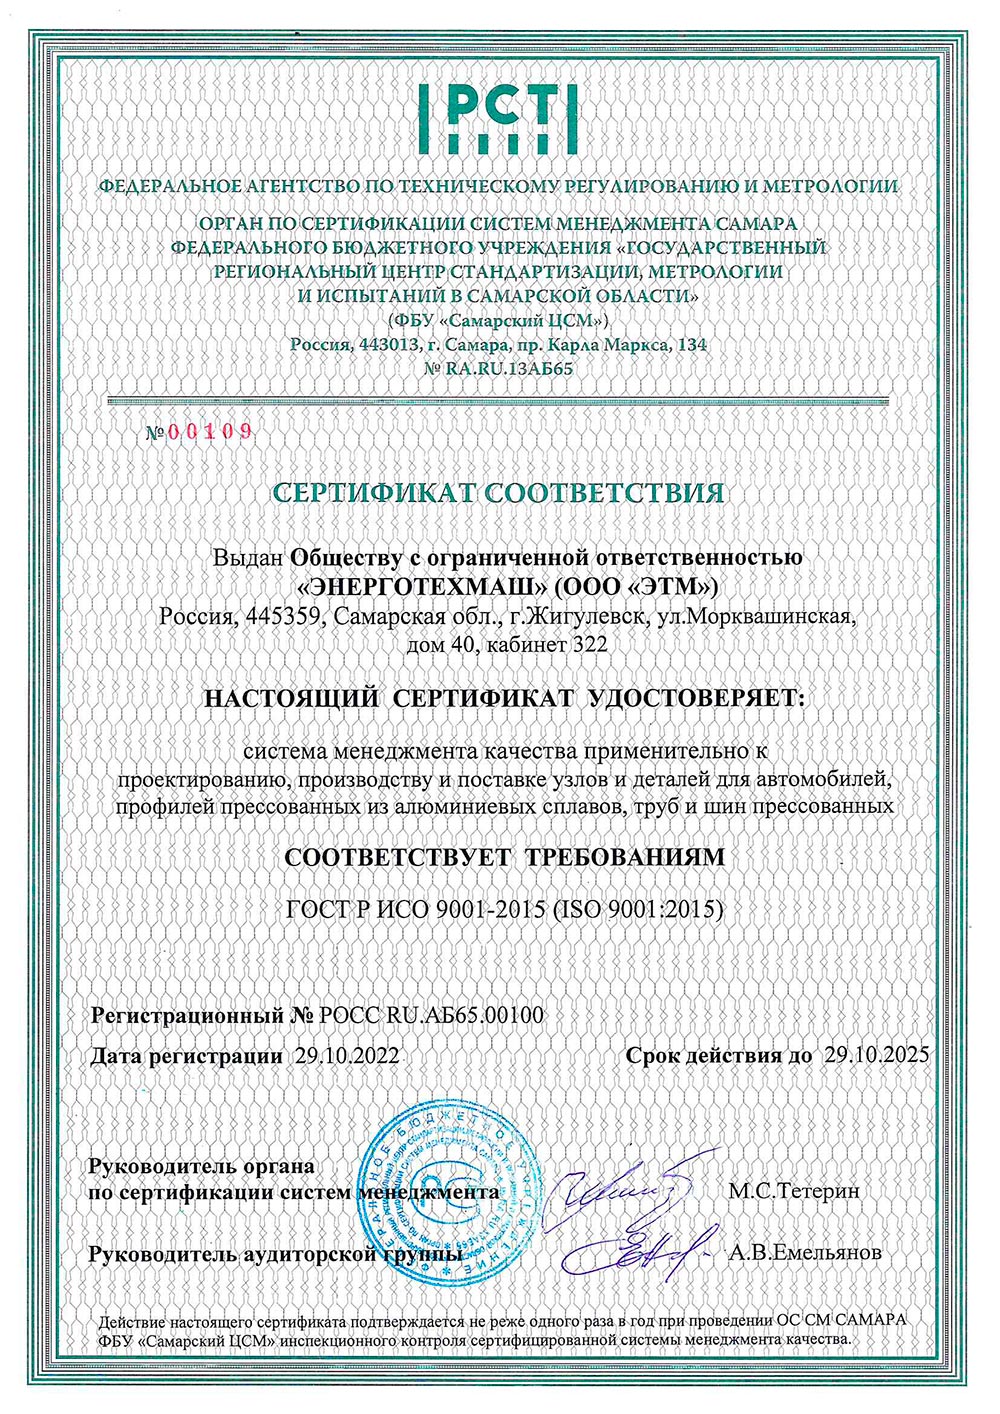 Энерготехмаш, сертификат соответствия, 29.10.2025